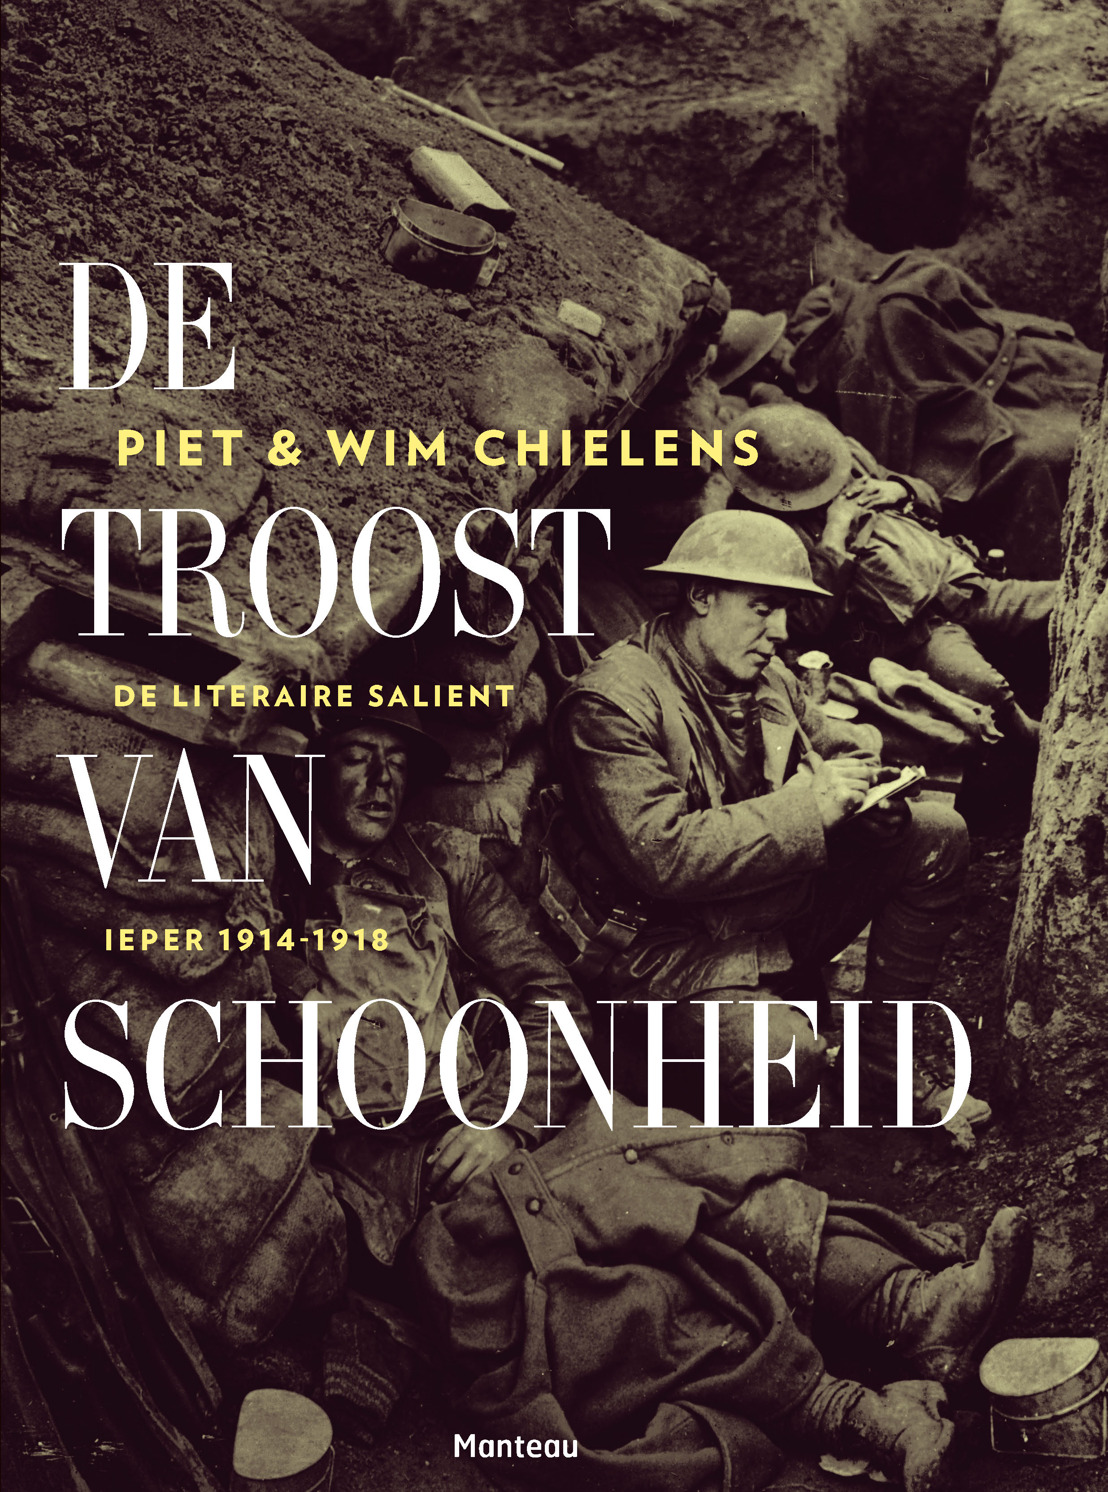 Piet & Wim Chielens - De troost van schoonheid. De literaire salient, Ieper 1914-1918